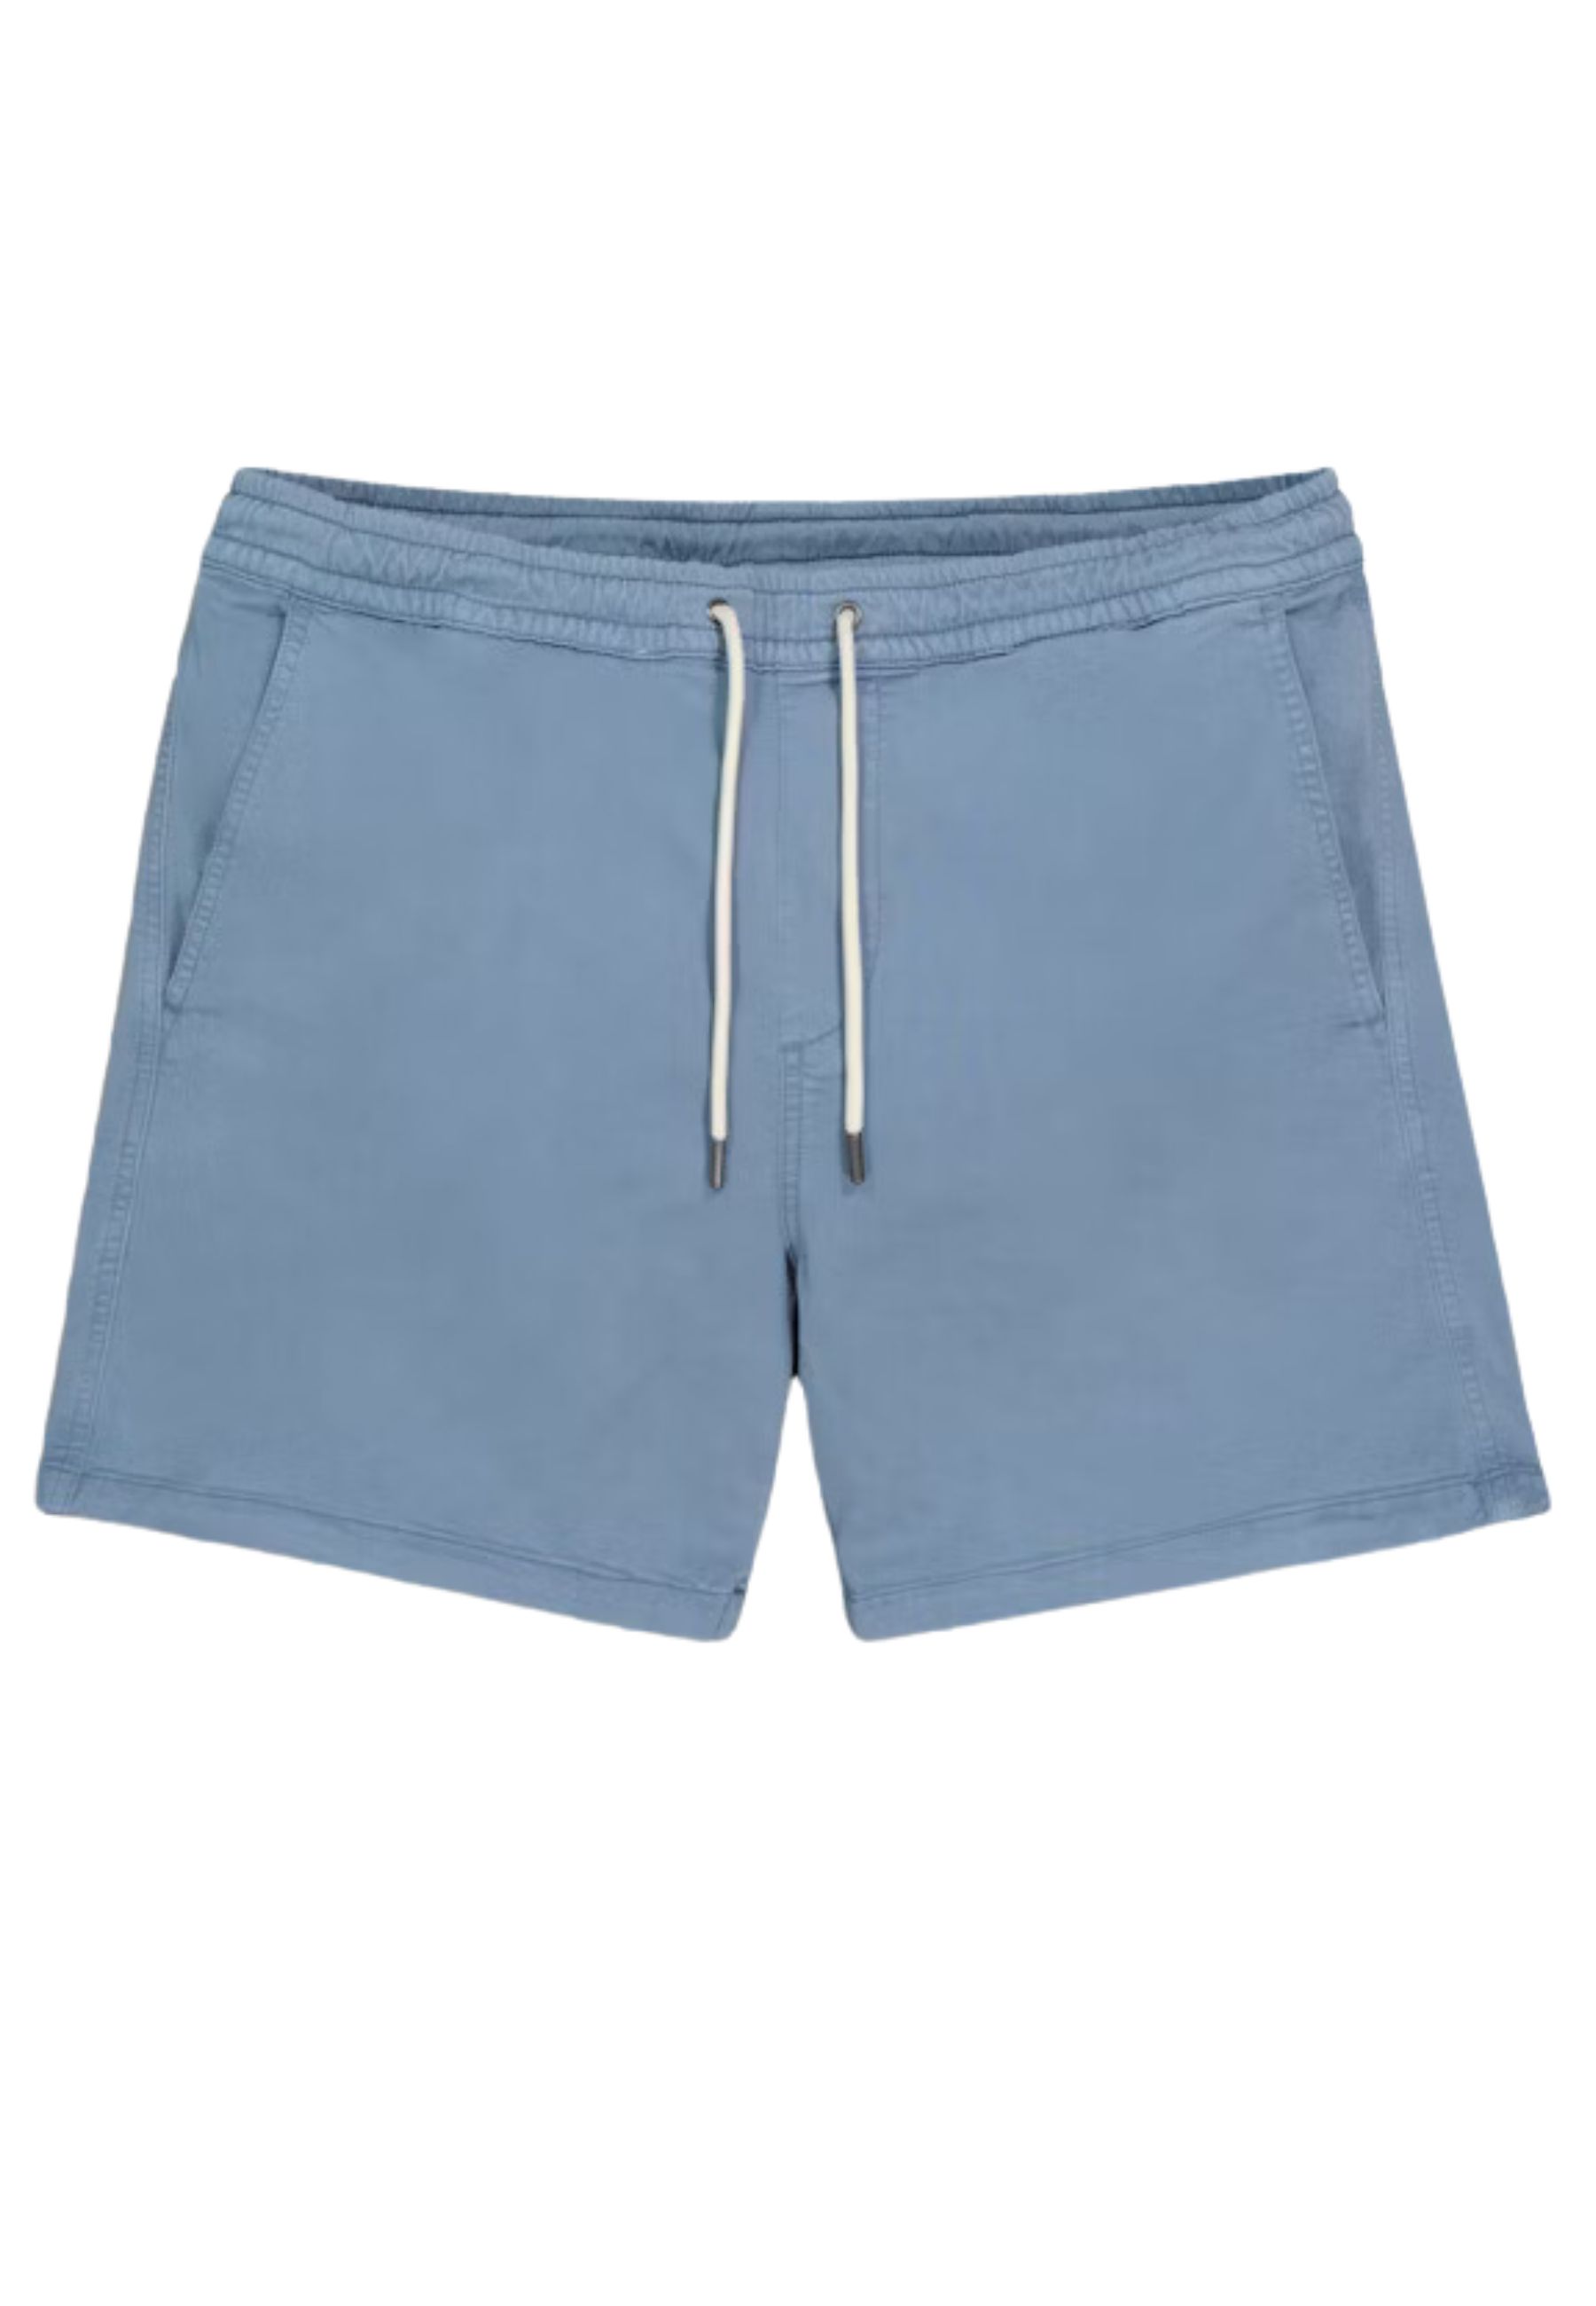 Broek Blauw Gregor shorts blauw